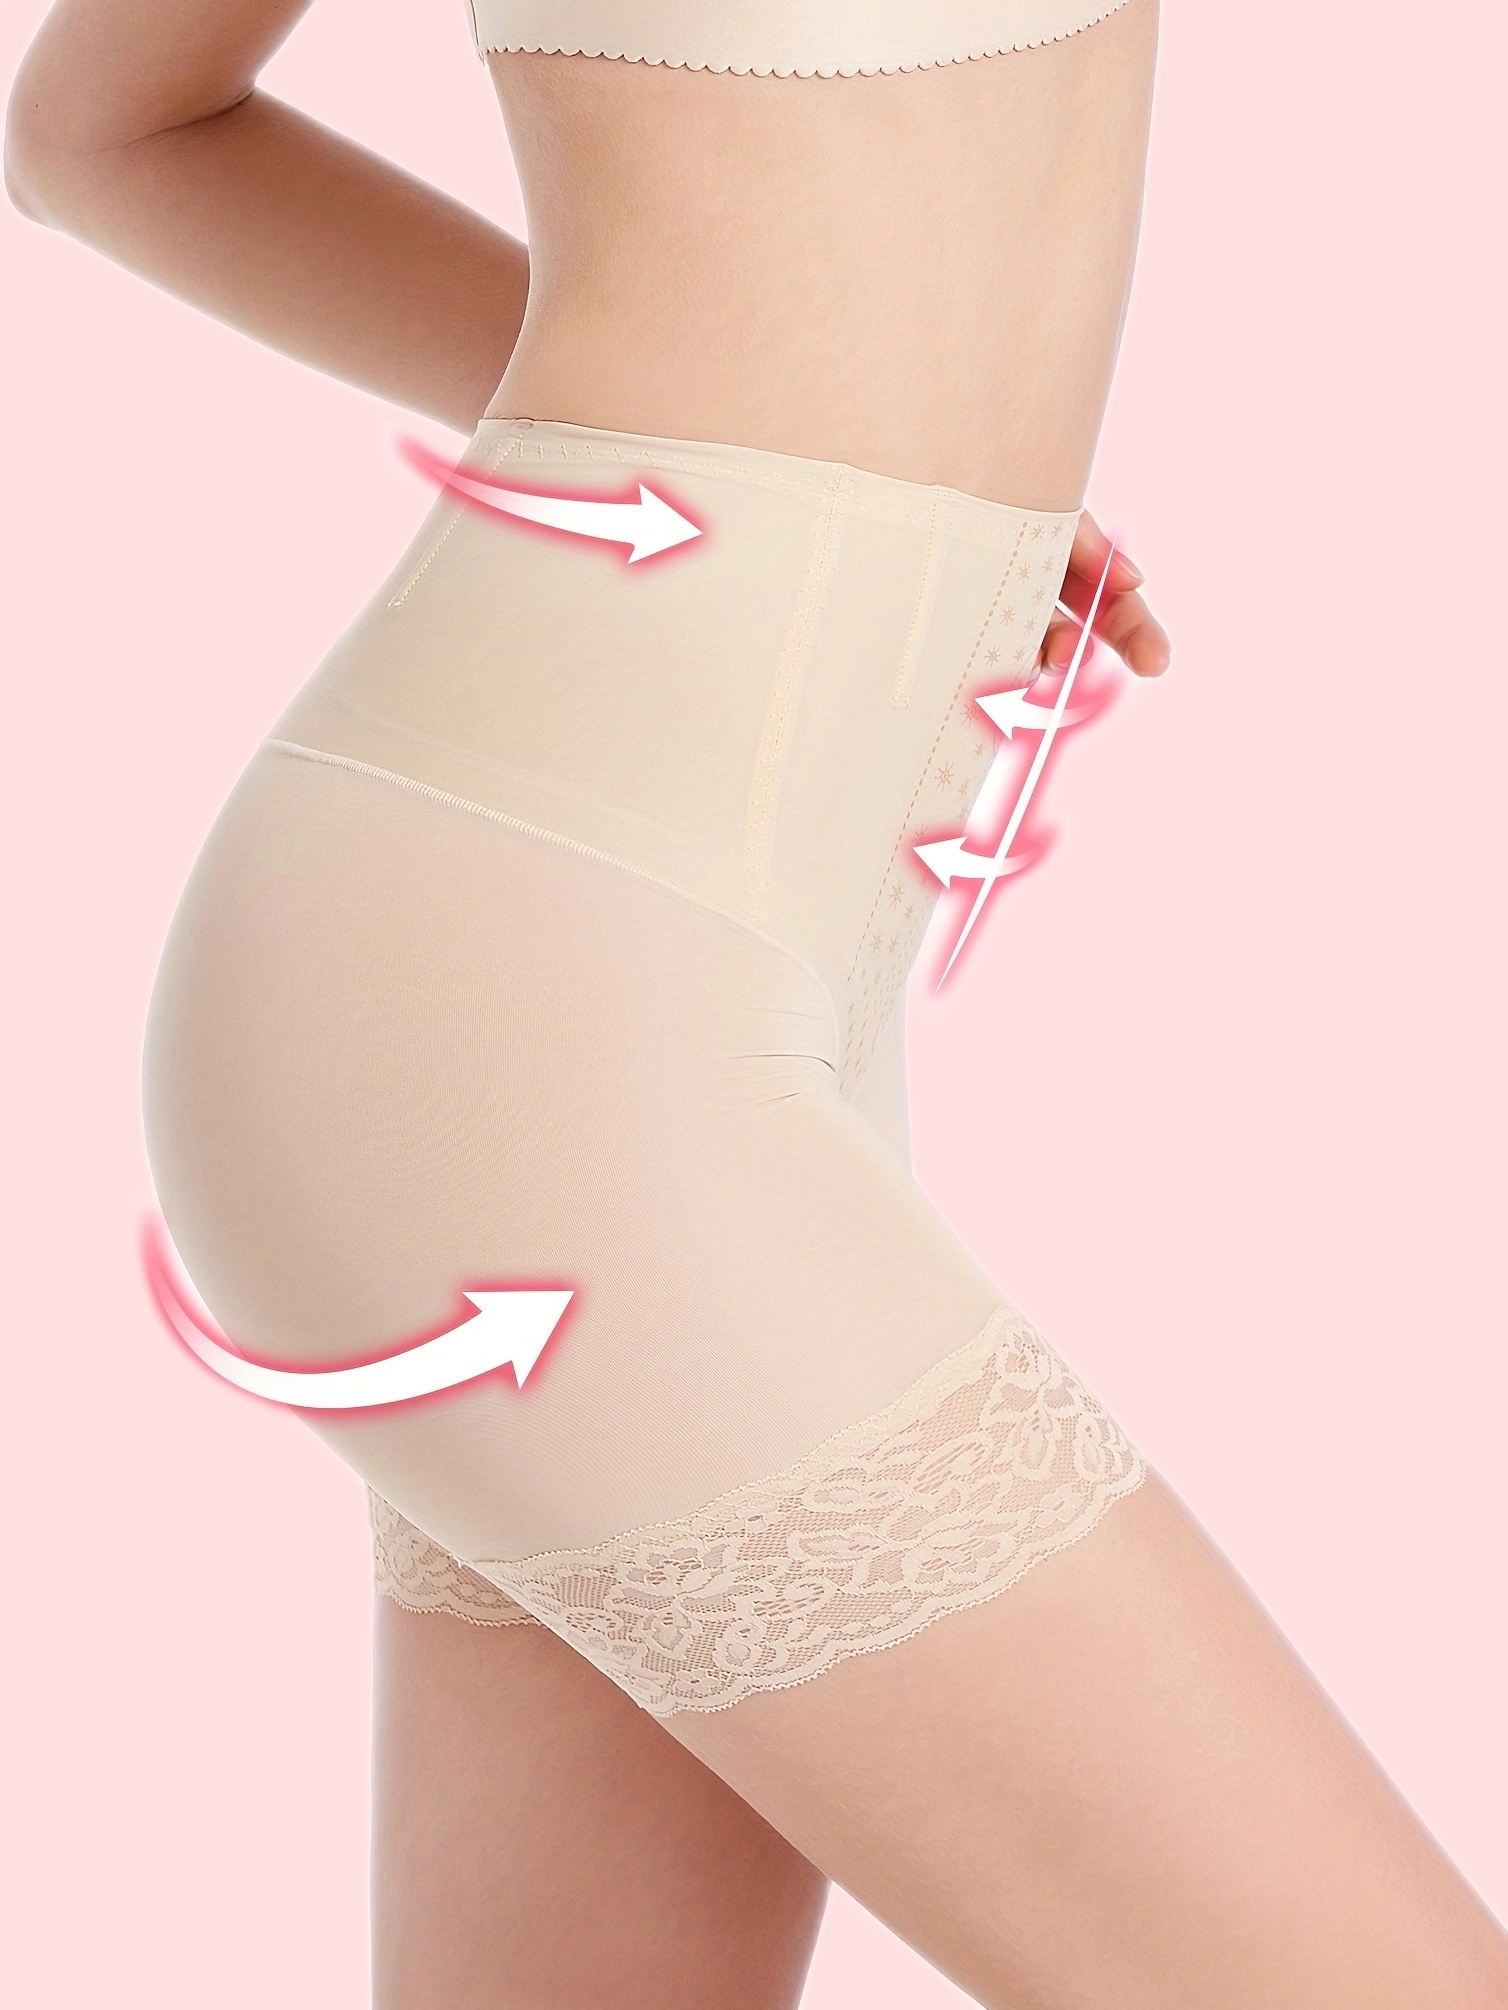 Bandage High Waisted Body Shaper Shorts Shapewear for Women Tummy